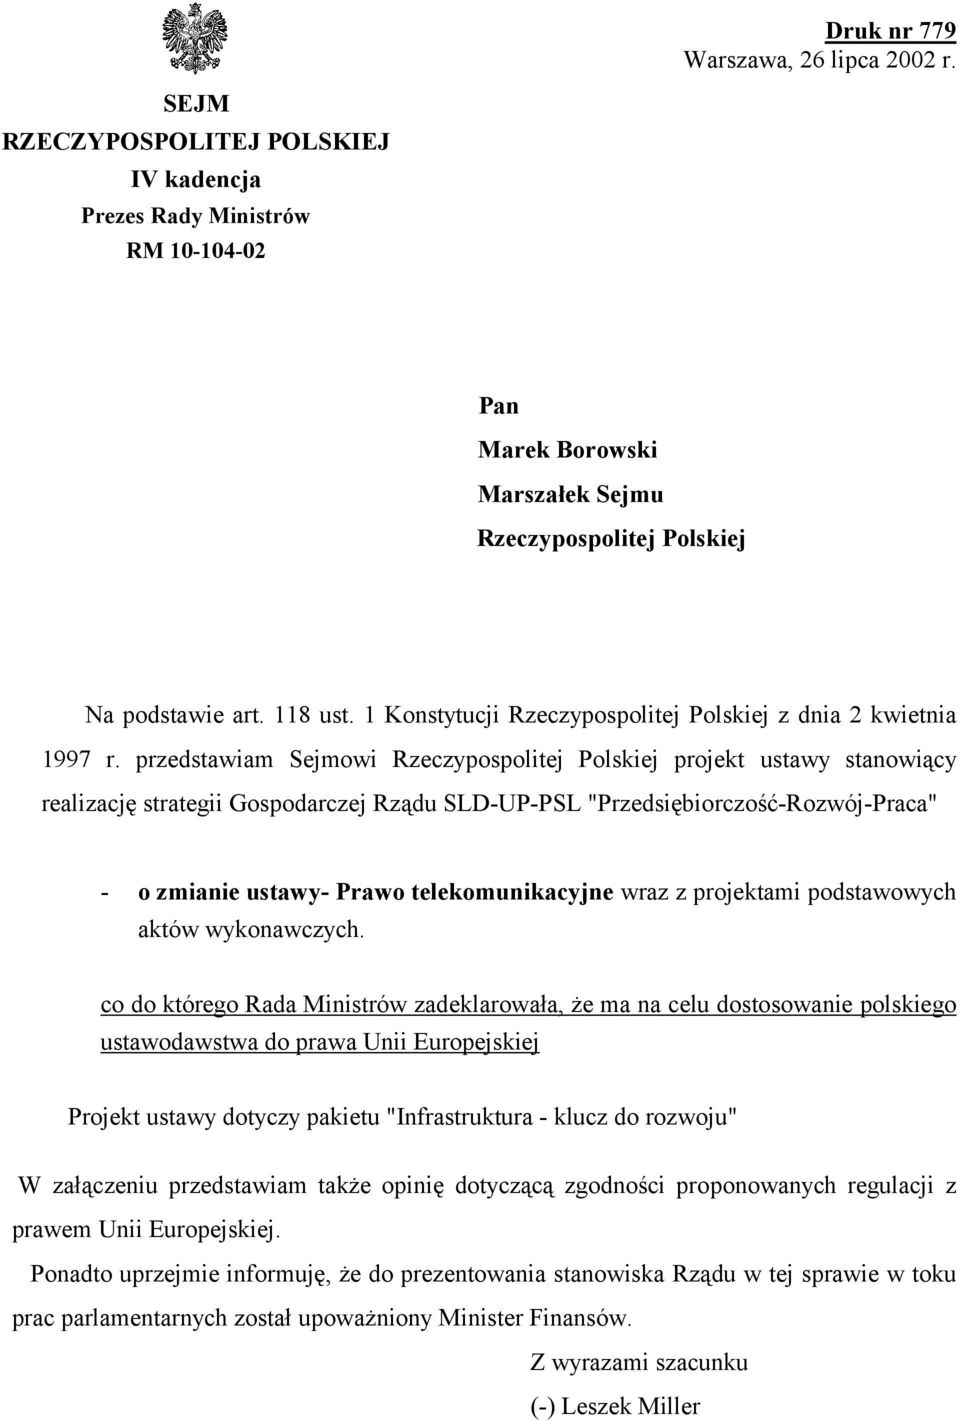 przedstawiam Sejmowi Rzeczypospolitej Polskiej projekt ustawy stanowiący realizację strategii Gospodarczej Rządu SLD-UP-PSL "Przedsiębiorczość-Rozwój-Praca" - o zmianie ustawy- Prawo